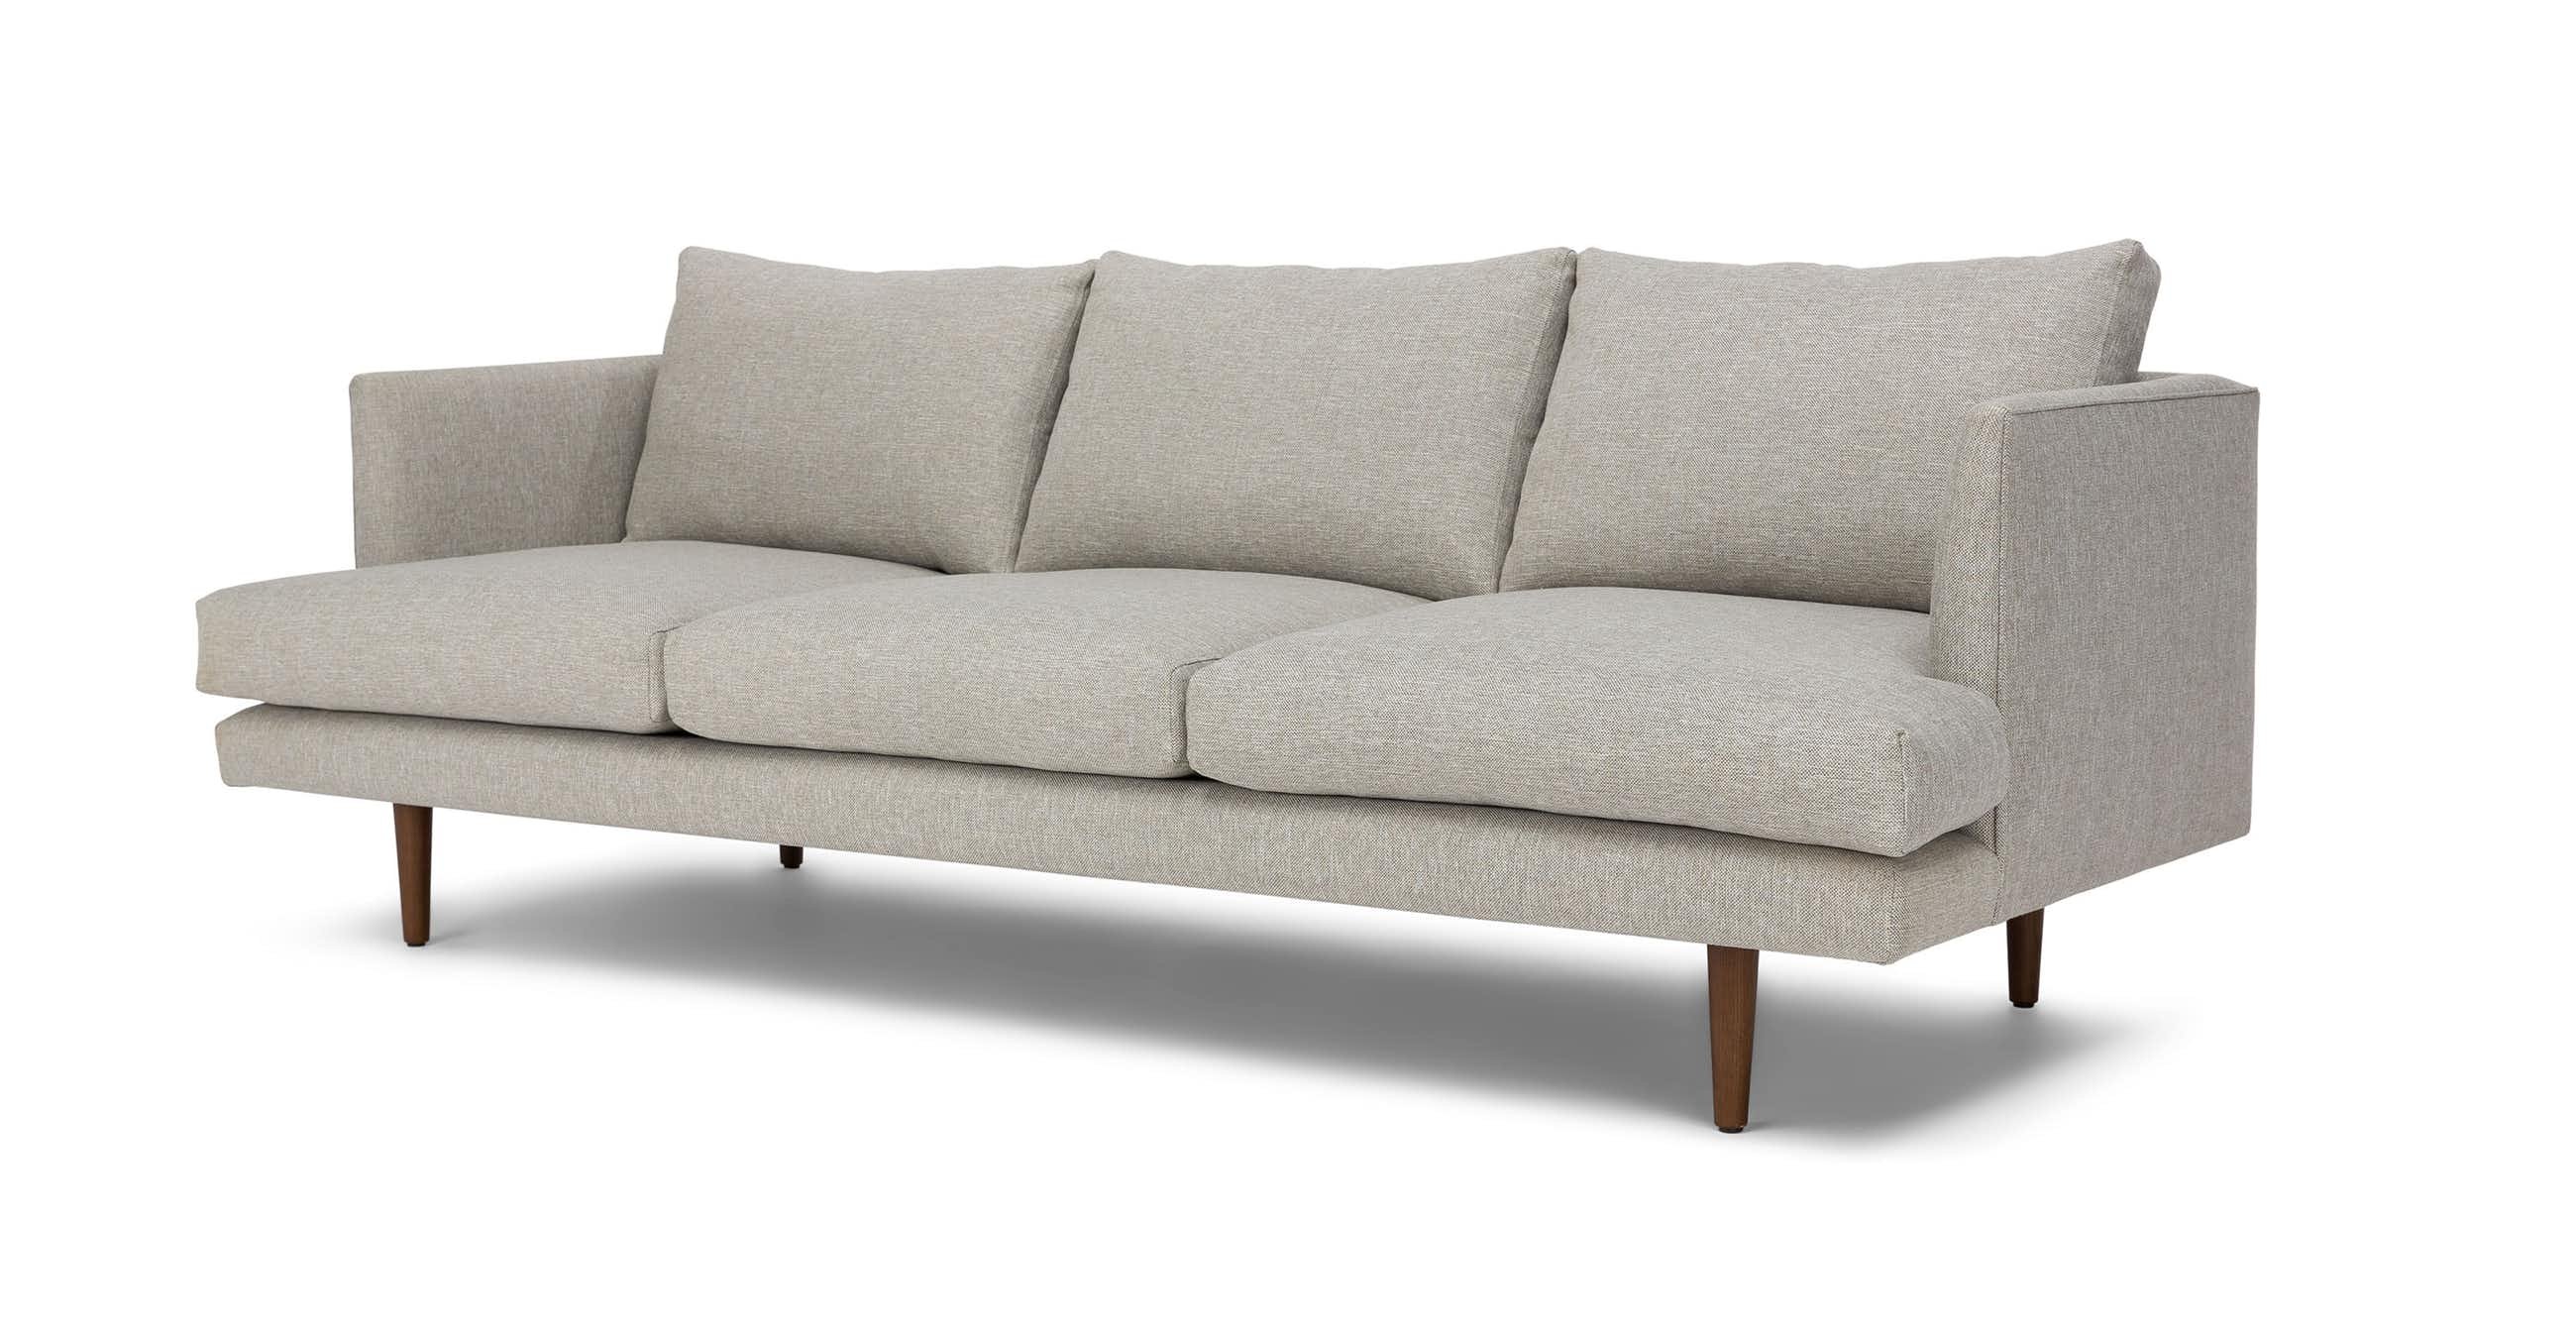 Burrard Seasalt Gray Sofa - Image 3